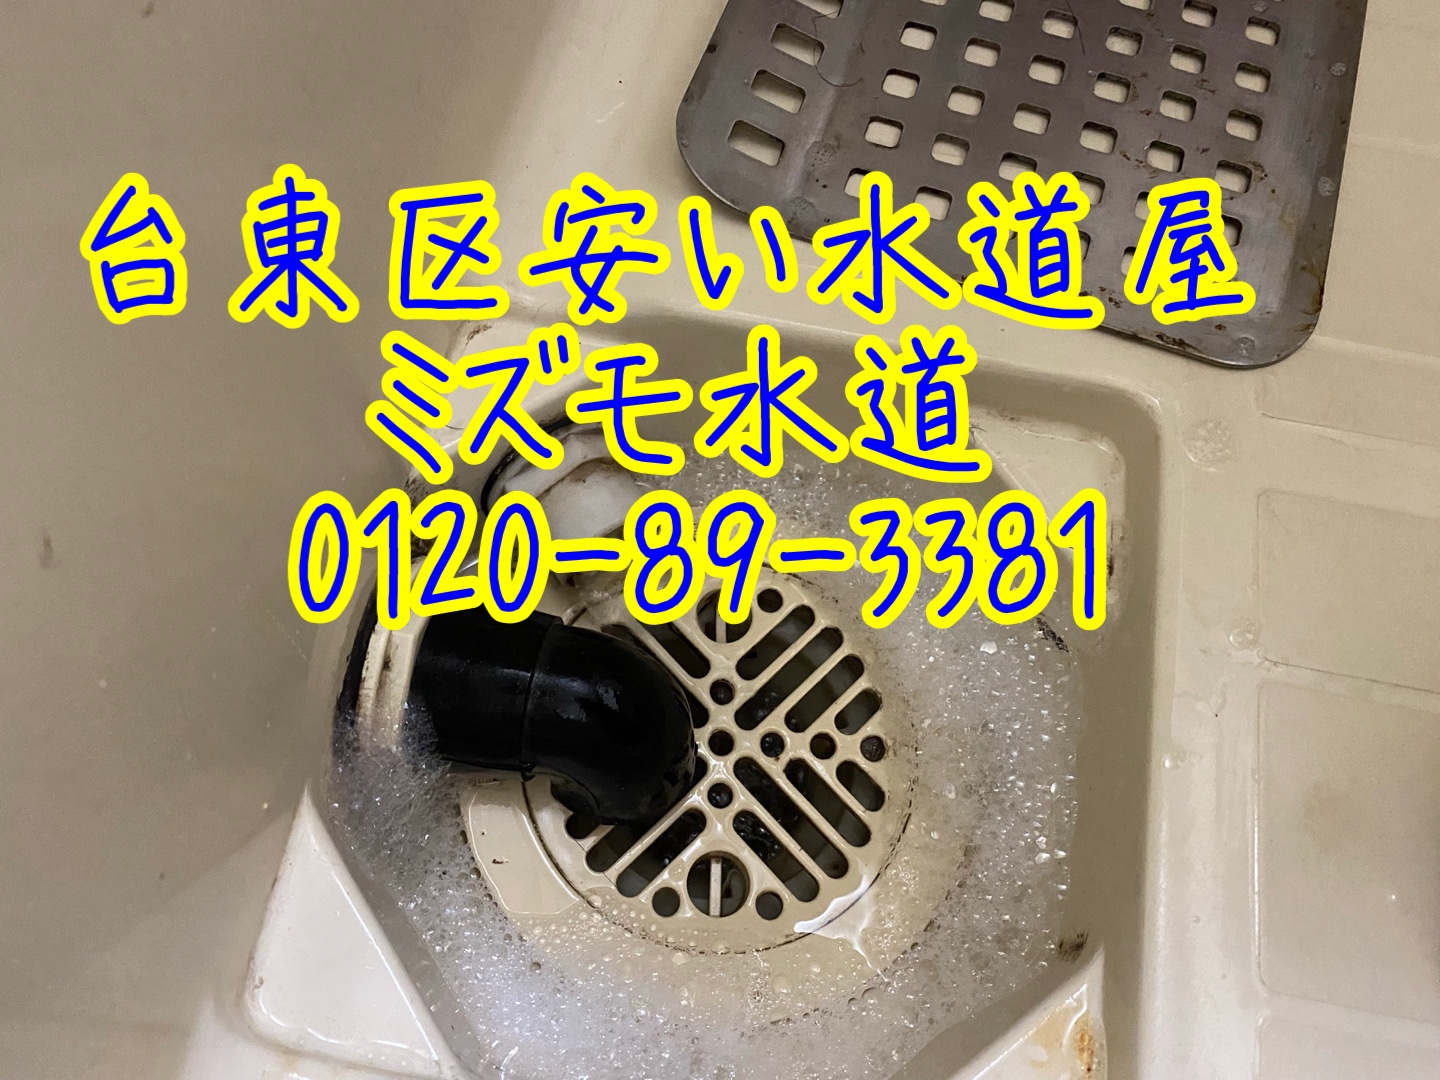 風呂つまり修理台東区清川